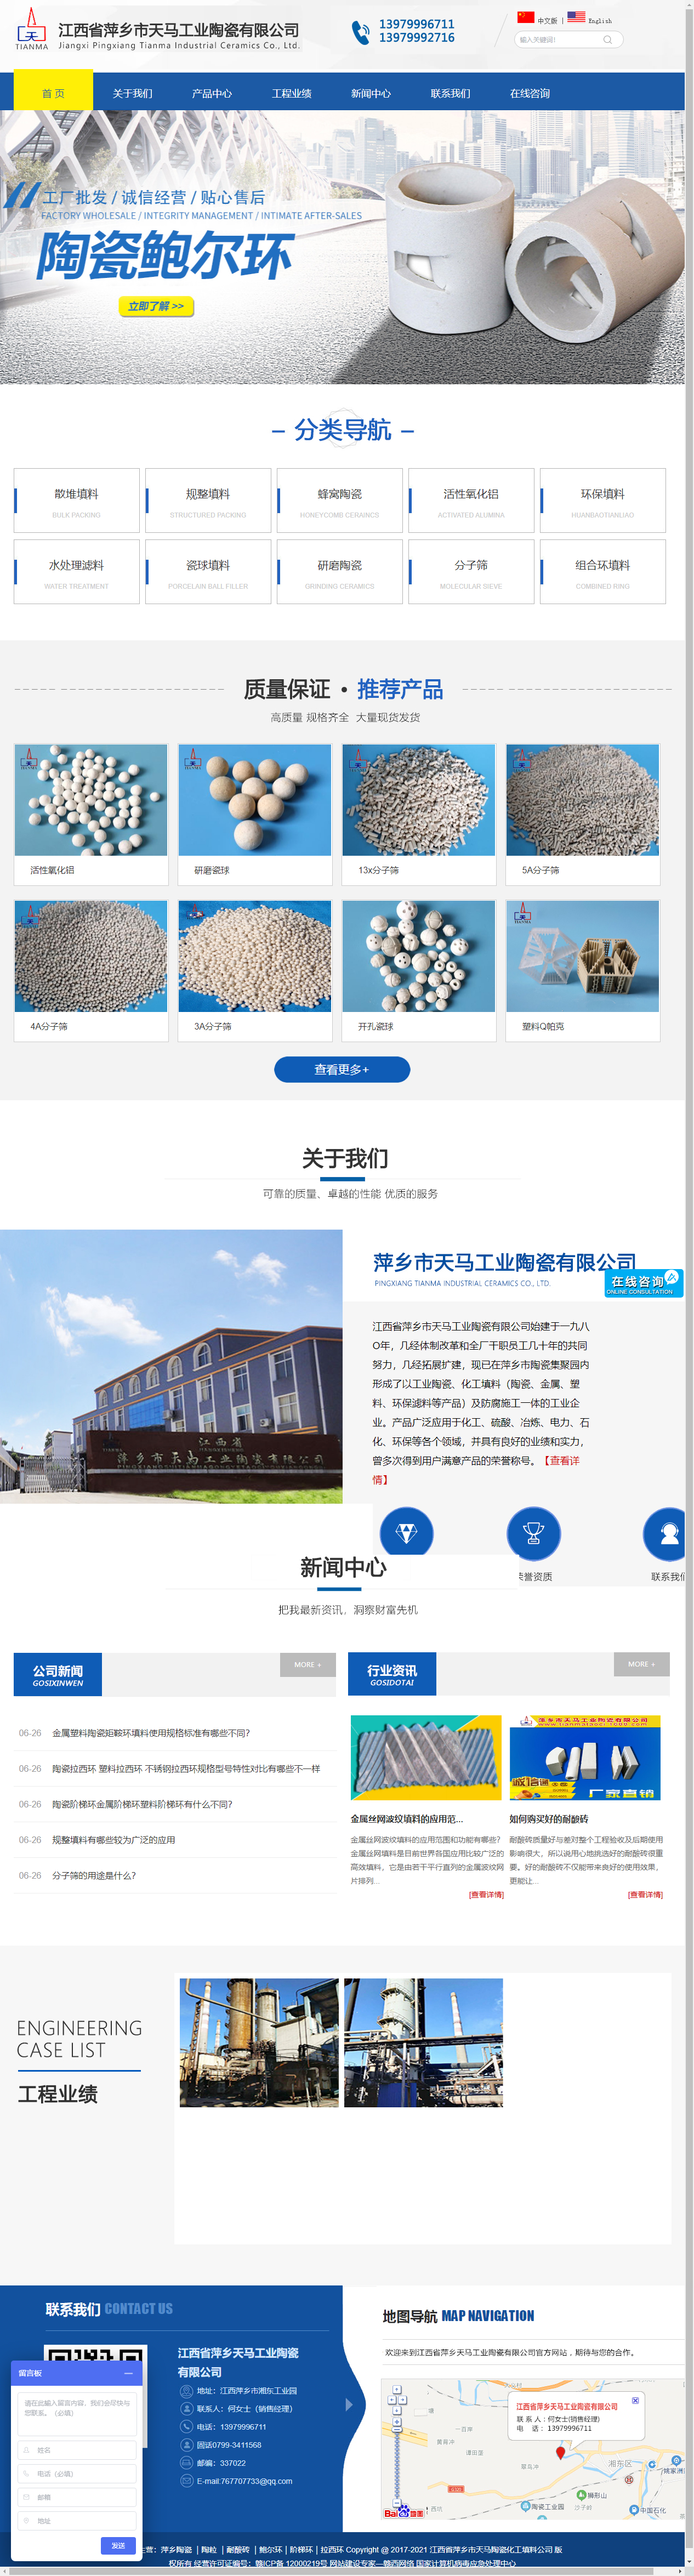 江西省萍乡市天马工业陶瓷有限公司网站案例